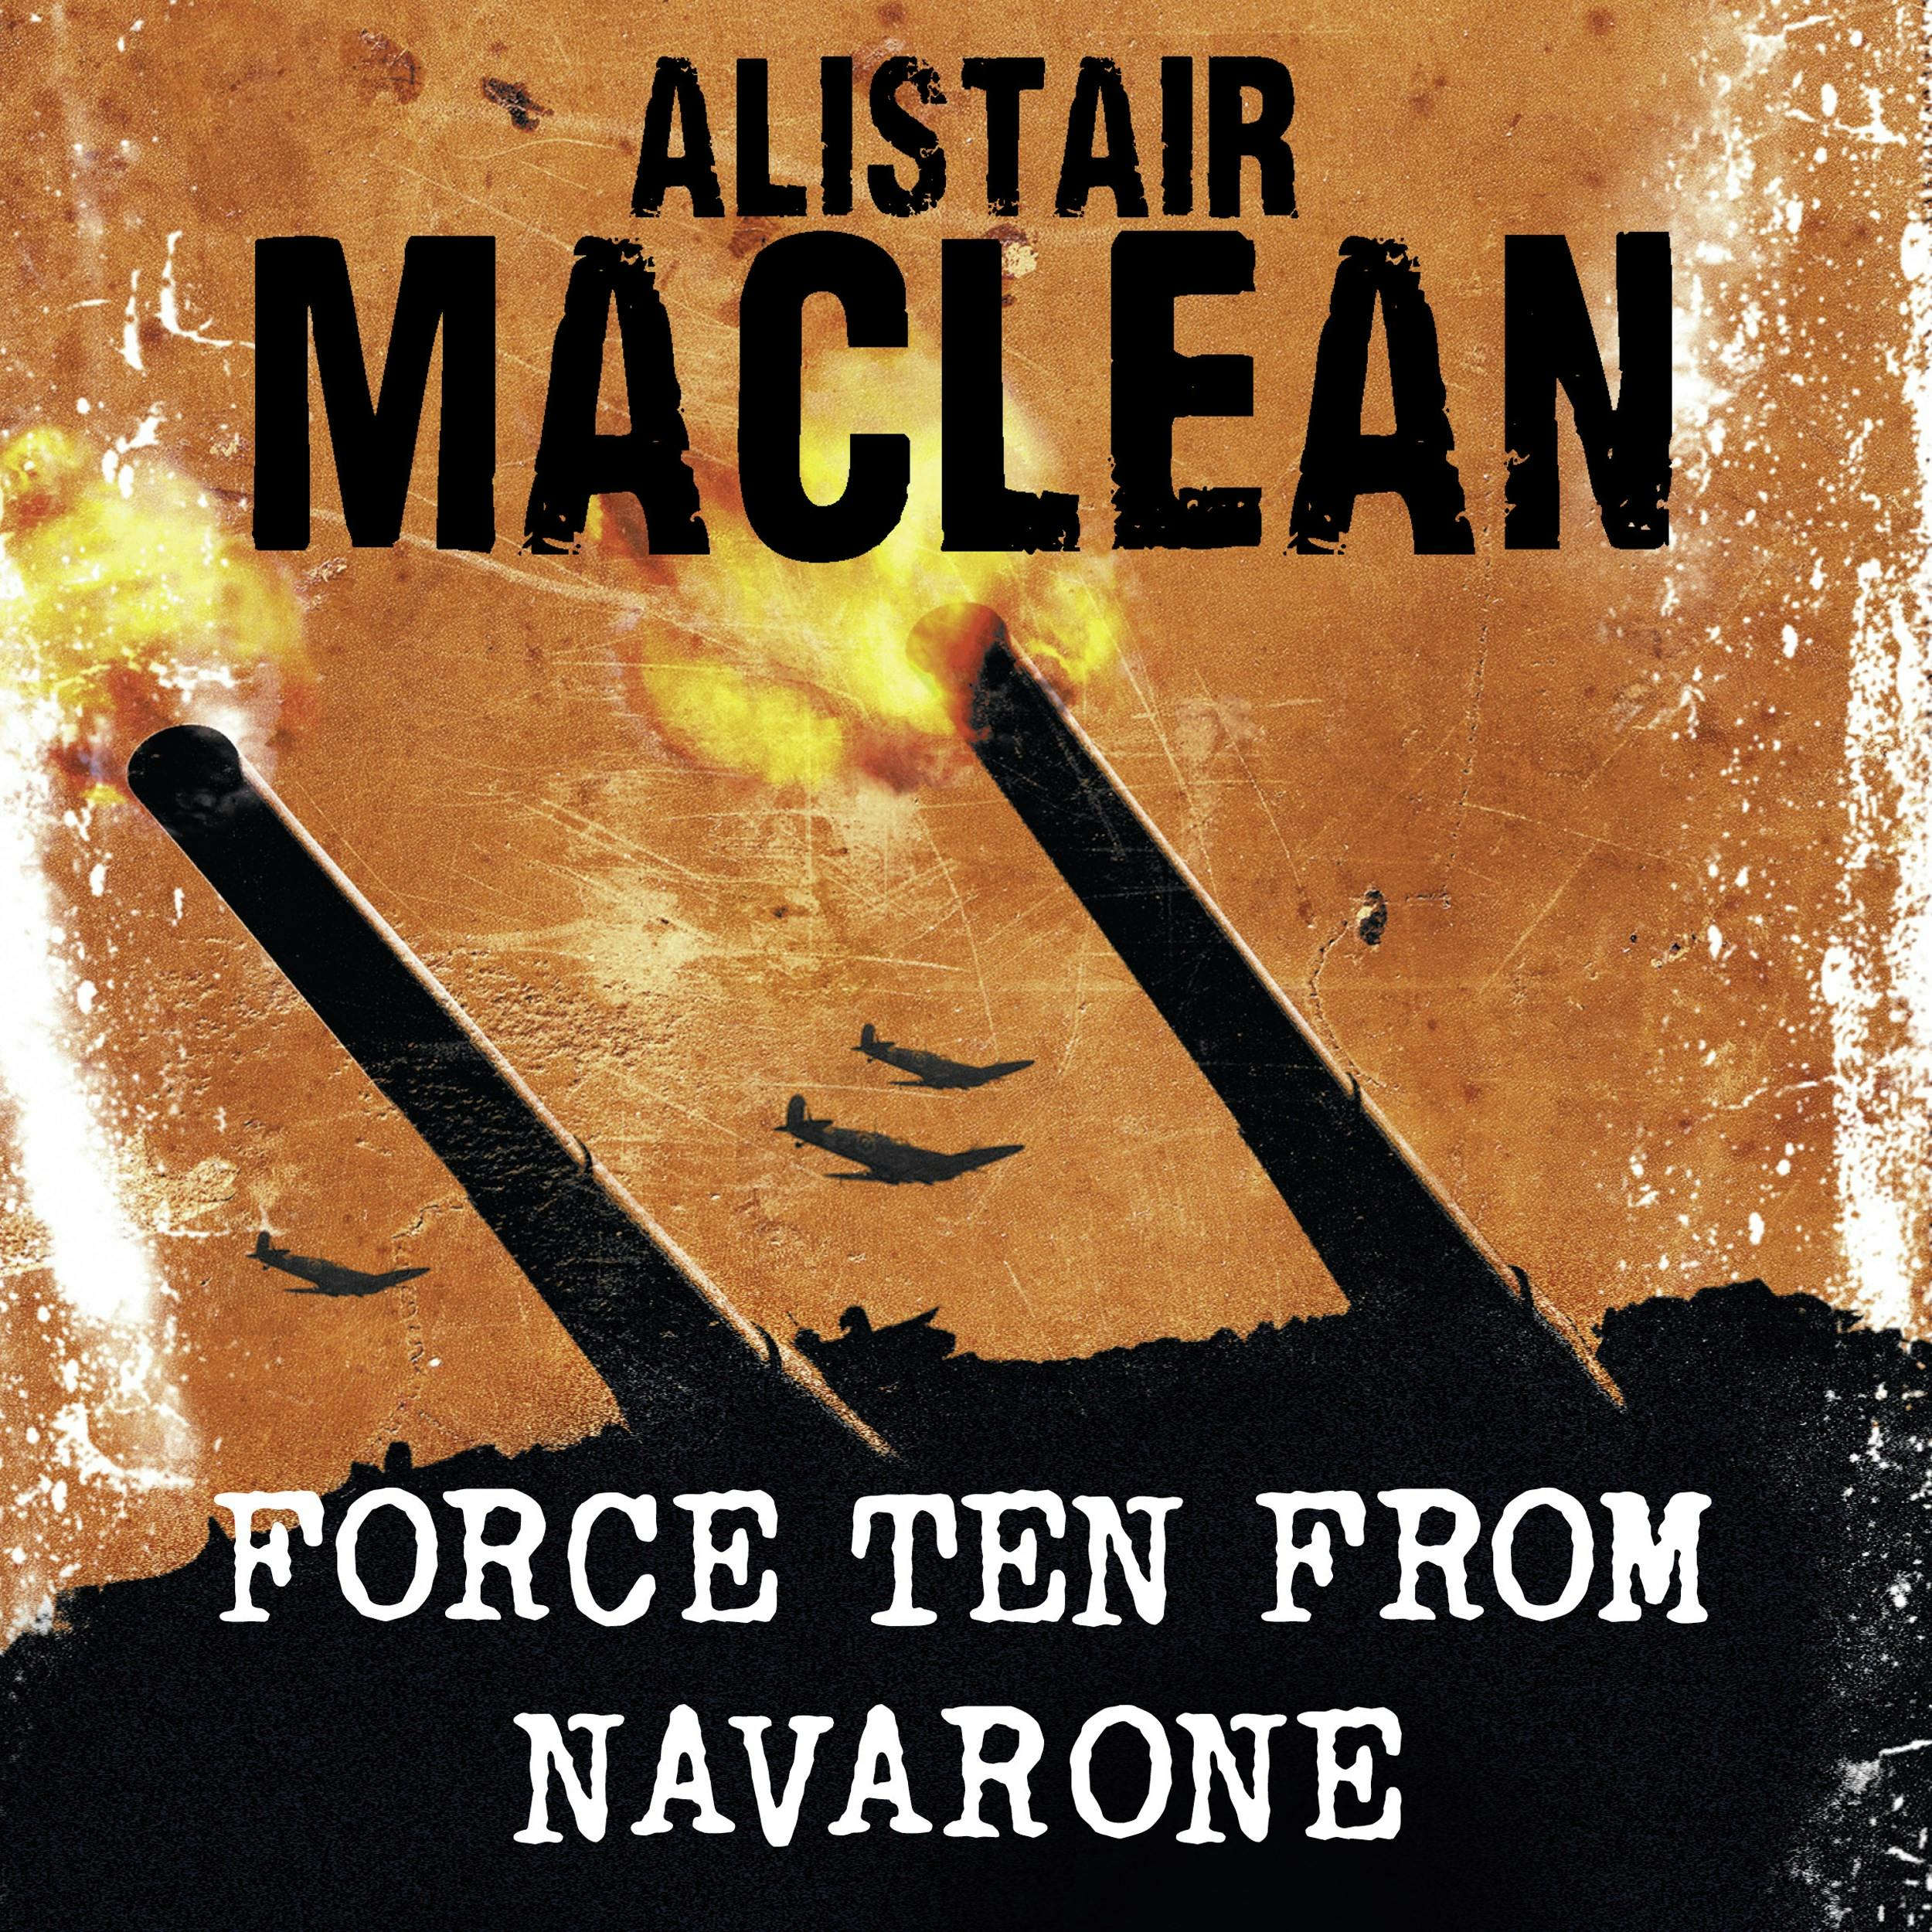 Force Ten from Navarone - Alistair MacLean